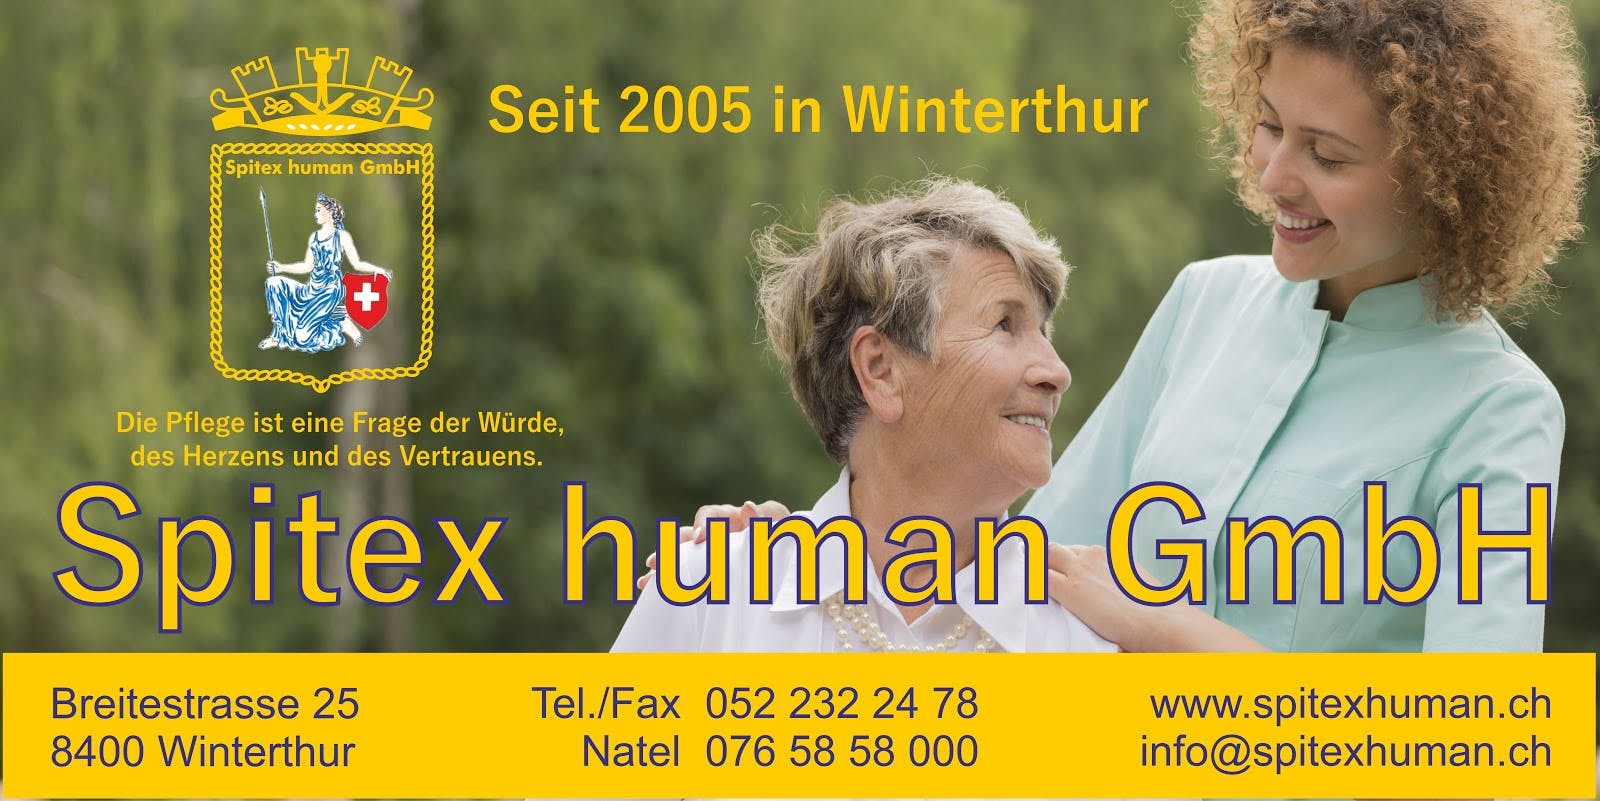 Spitex human GmbH